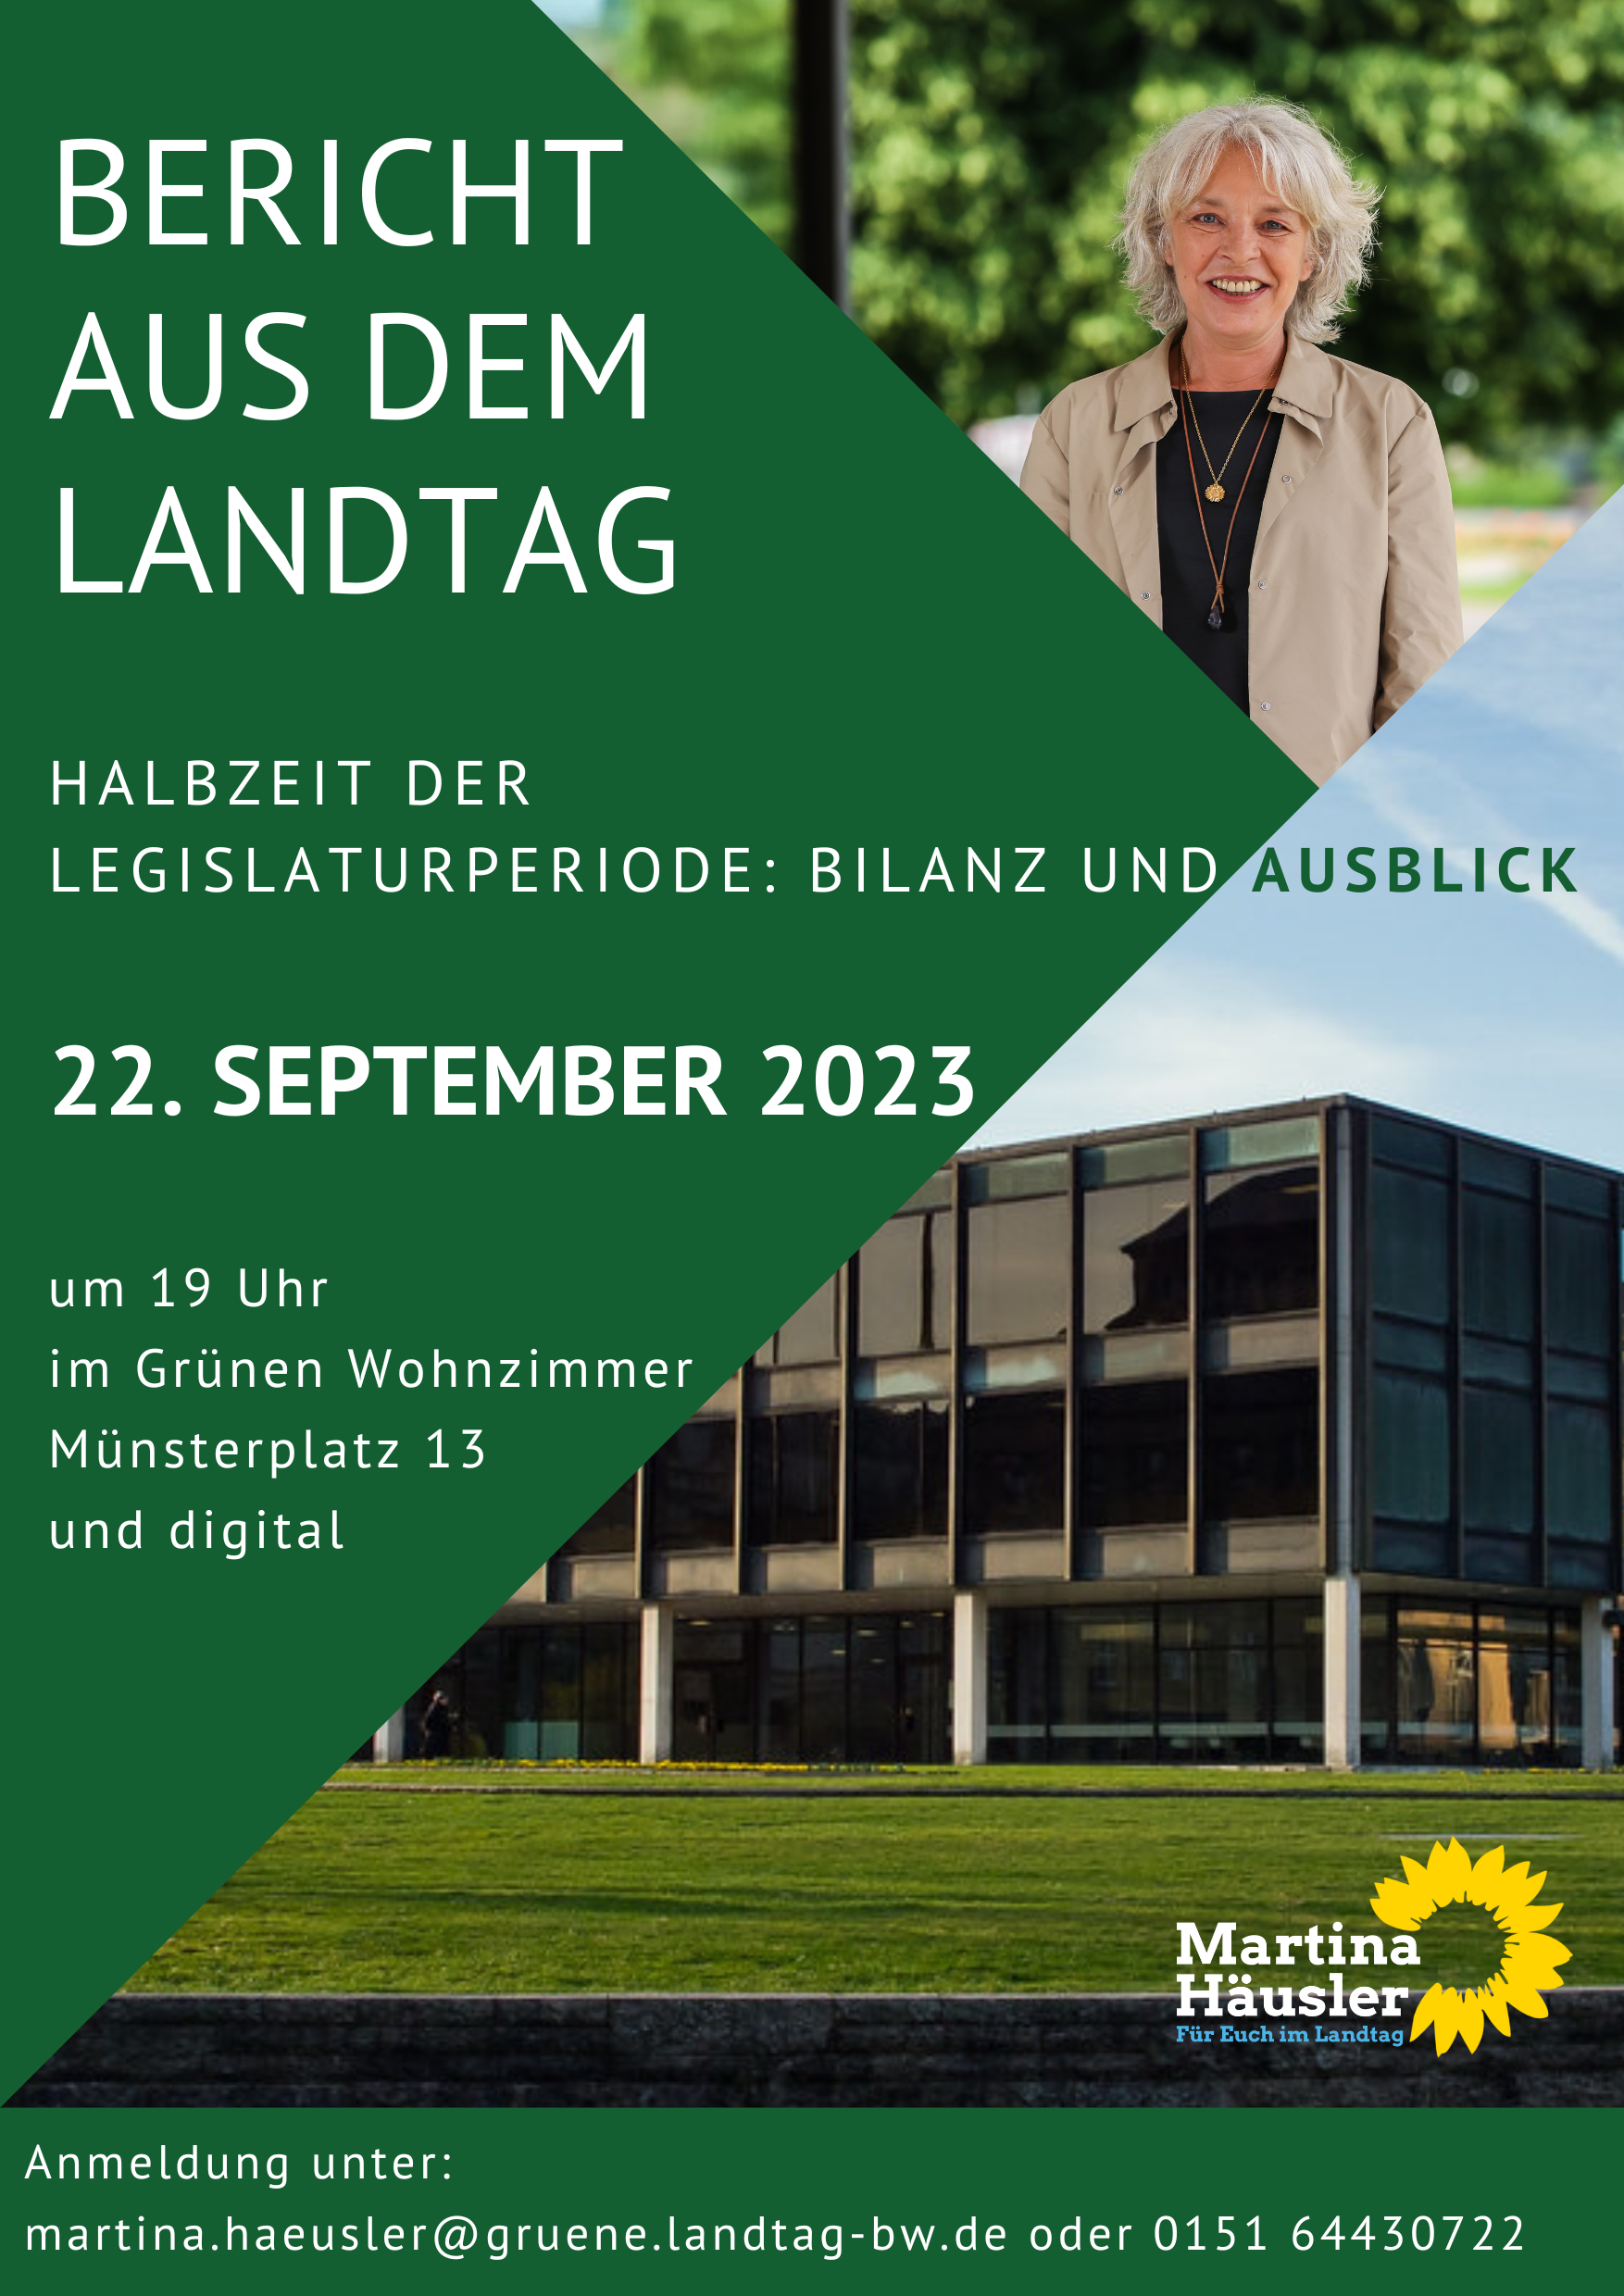 Plakat der Veranstaltung "Bericht aus dem Landtag" mit Bild der Abgeordneten Martina Häusler, Bild des Landtags und Infos zur Veranstaltung.